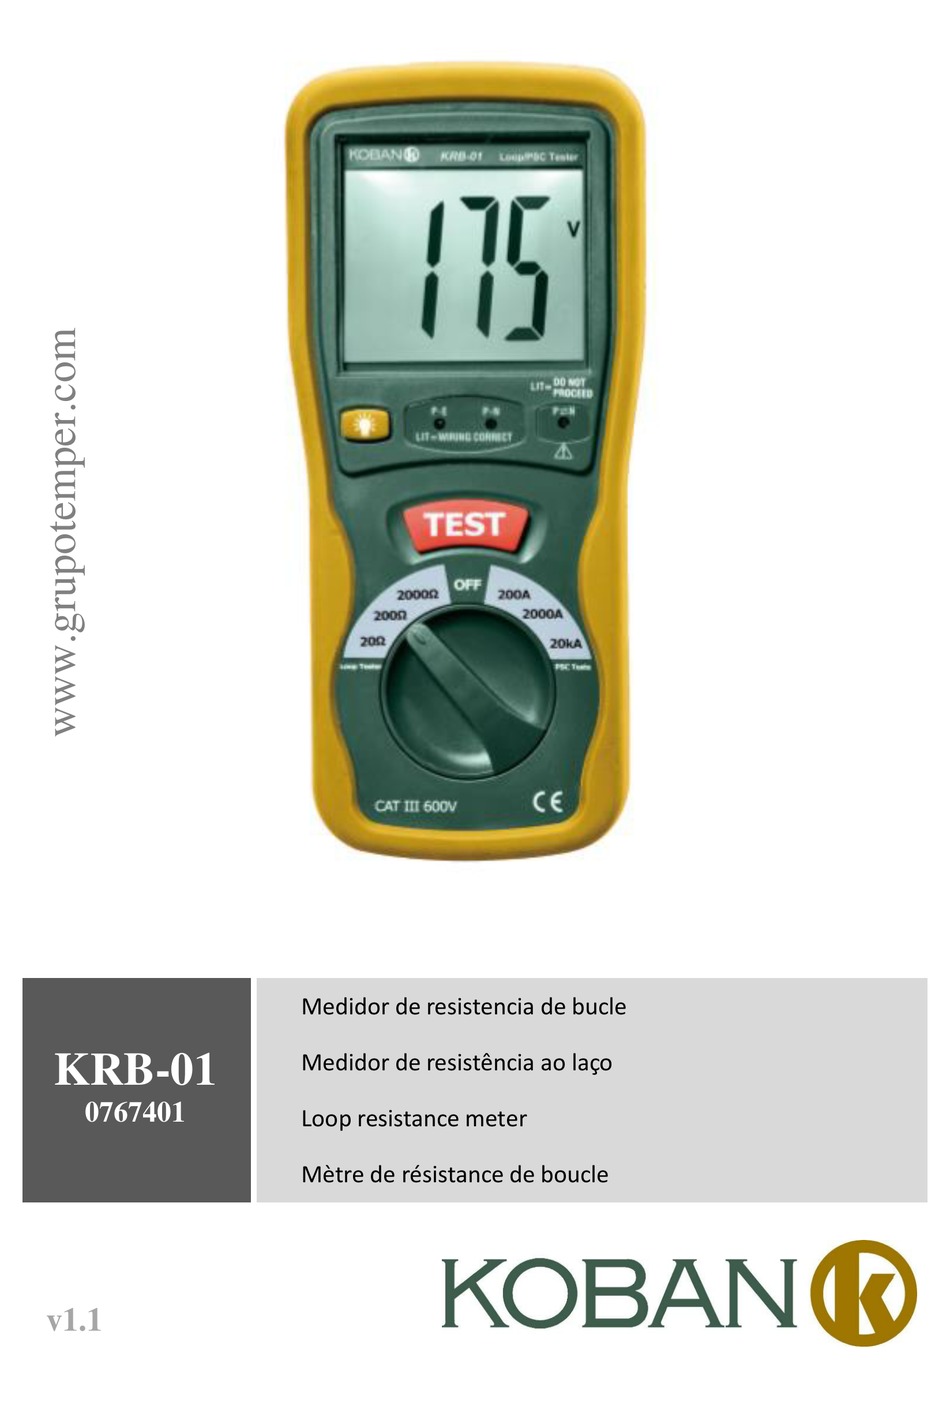 KOBAN KRB-01 MANUAL Pdf Download | ManualsLib